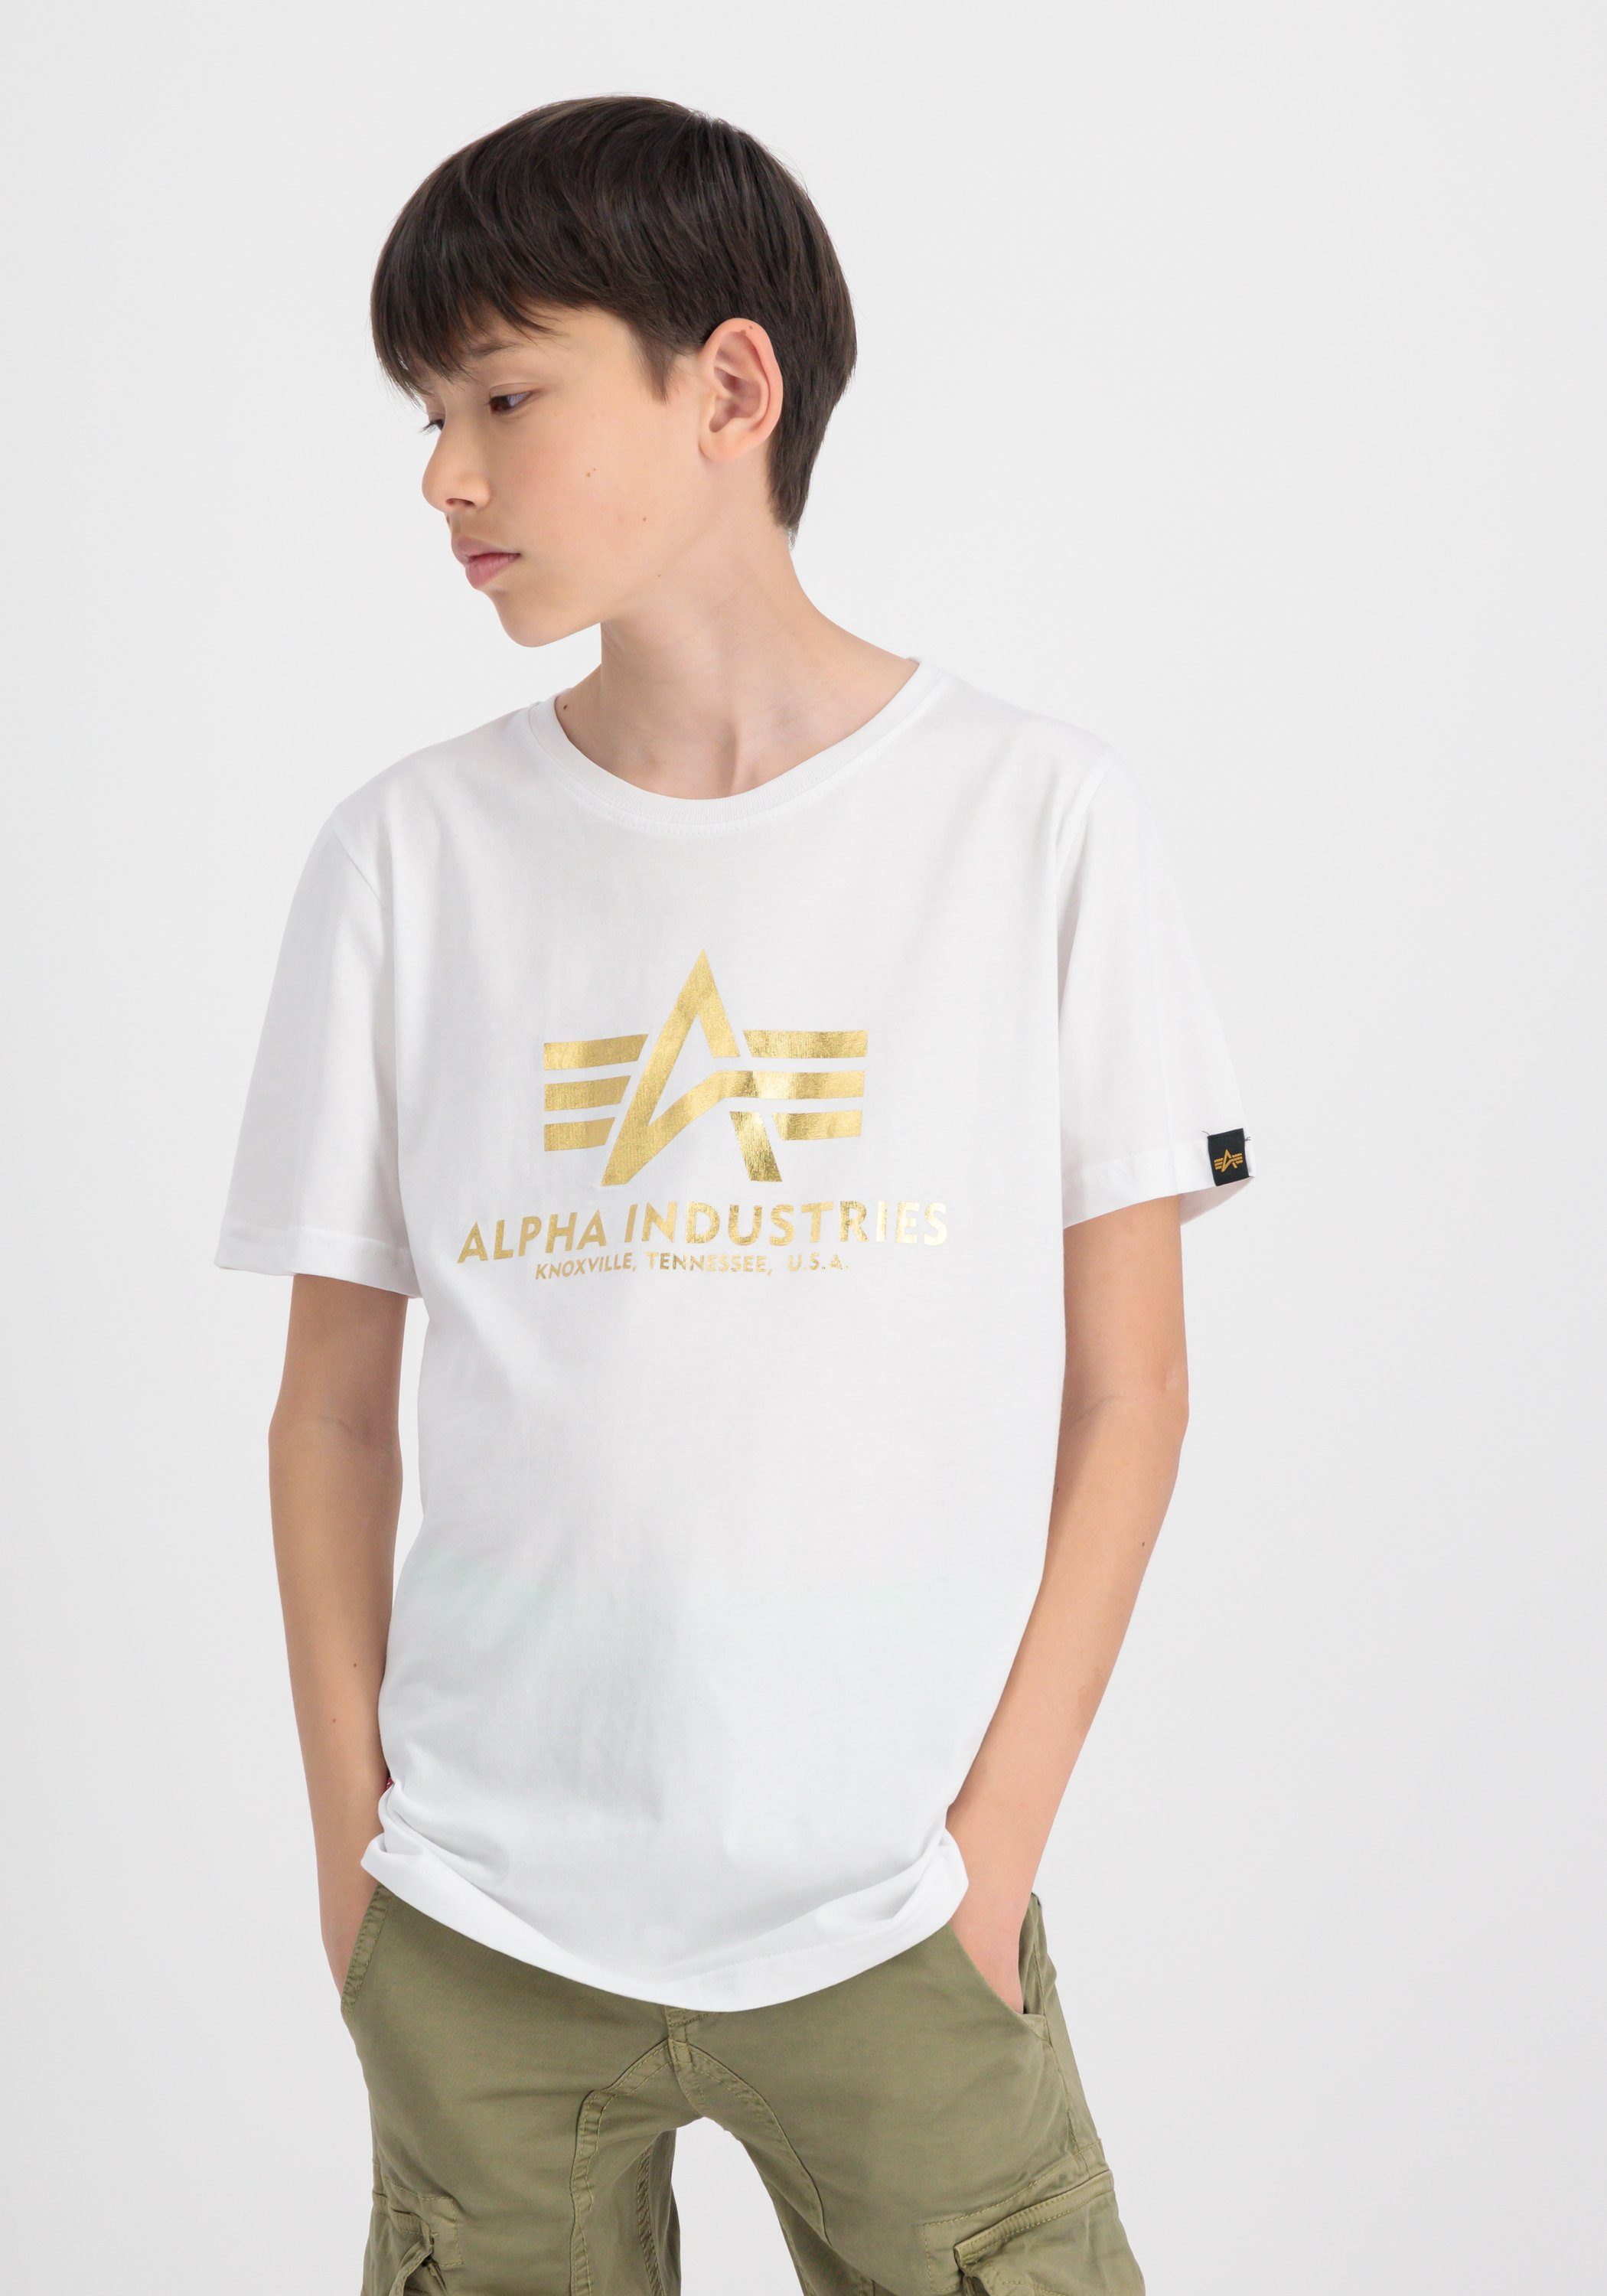 Alpha Industries T-shirt Kids T-Shirts Basic T Foil Print Kids Teens